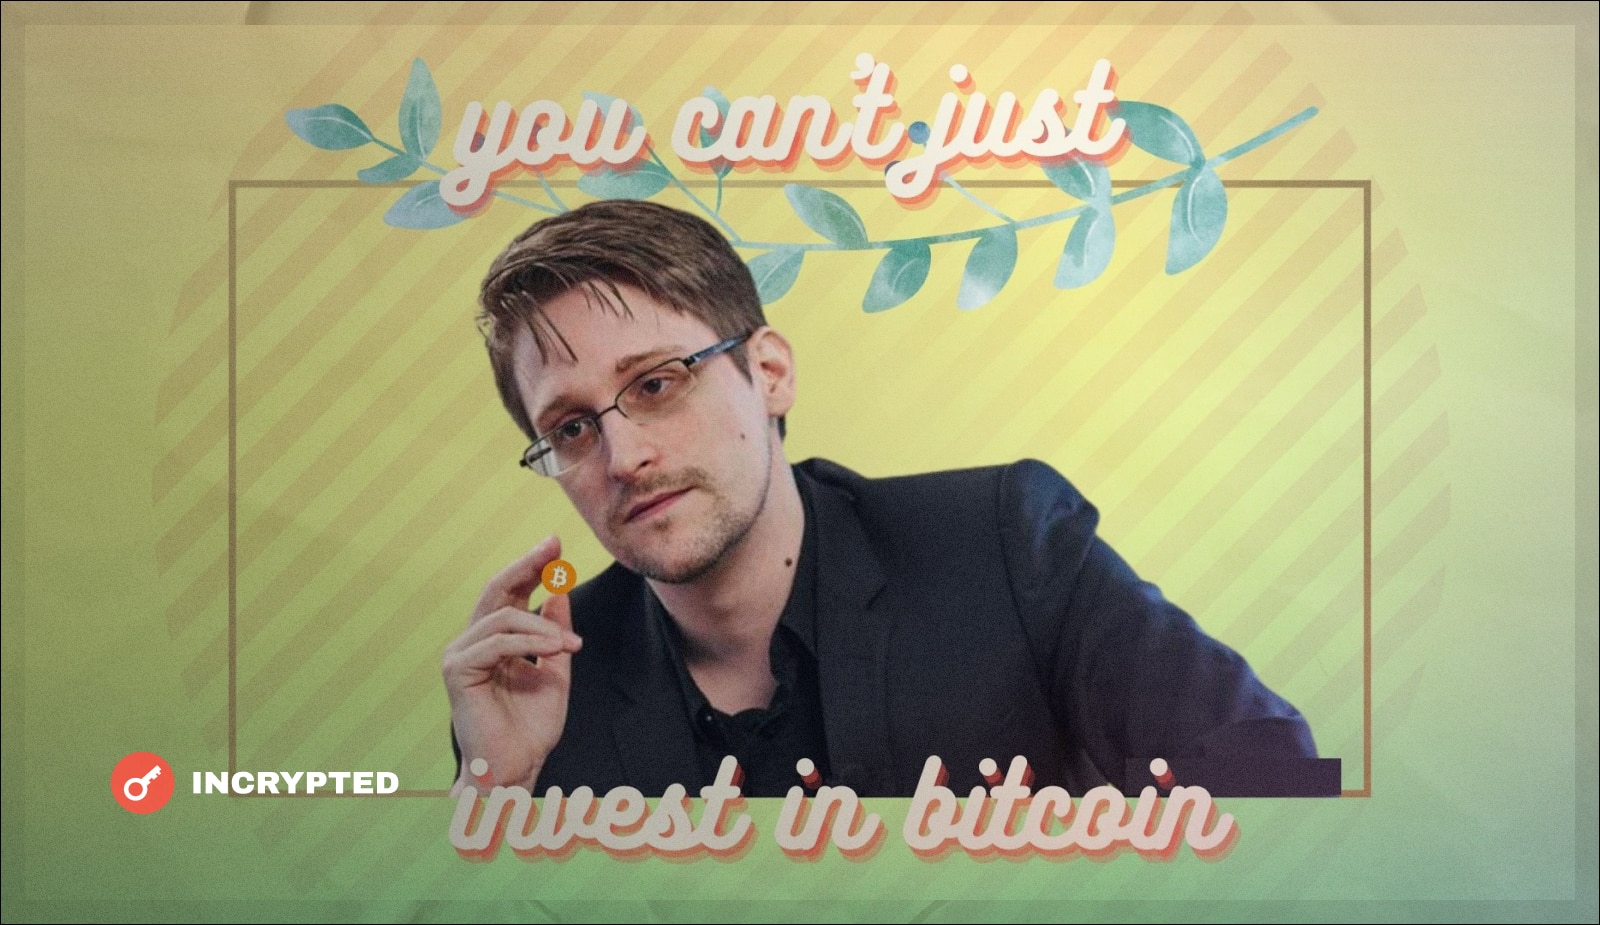 Эдвард Сноуден: «Используйте биткоин, а не инвестируйте». Заглавный коллаж новости.